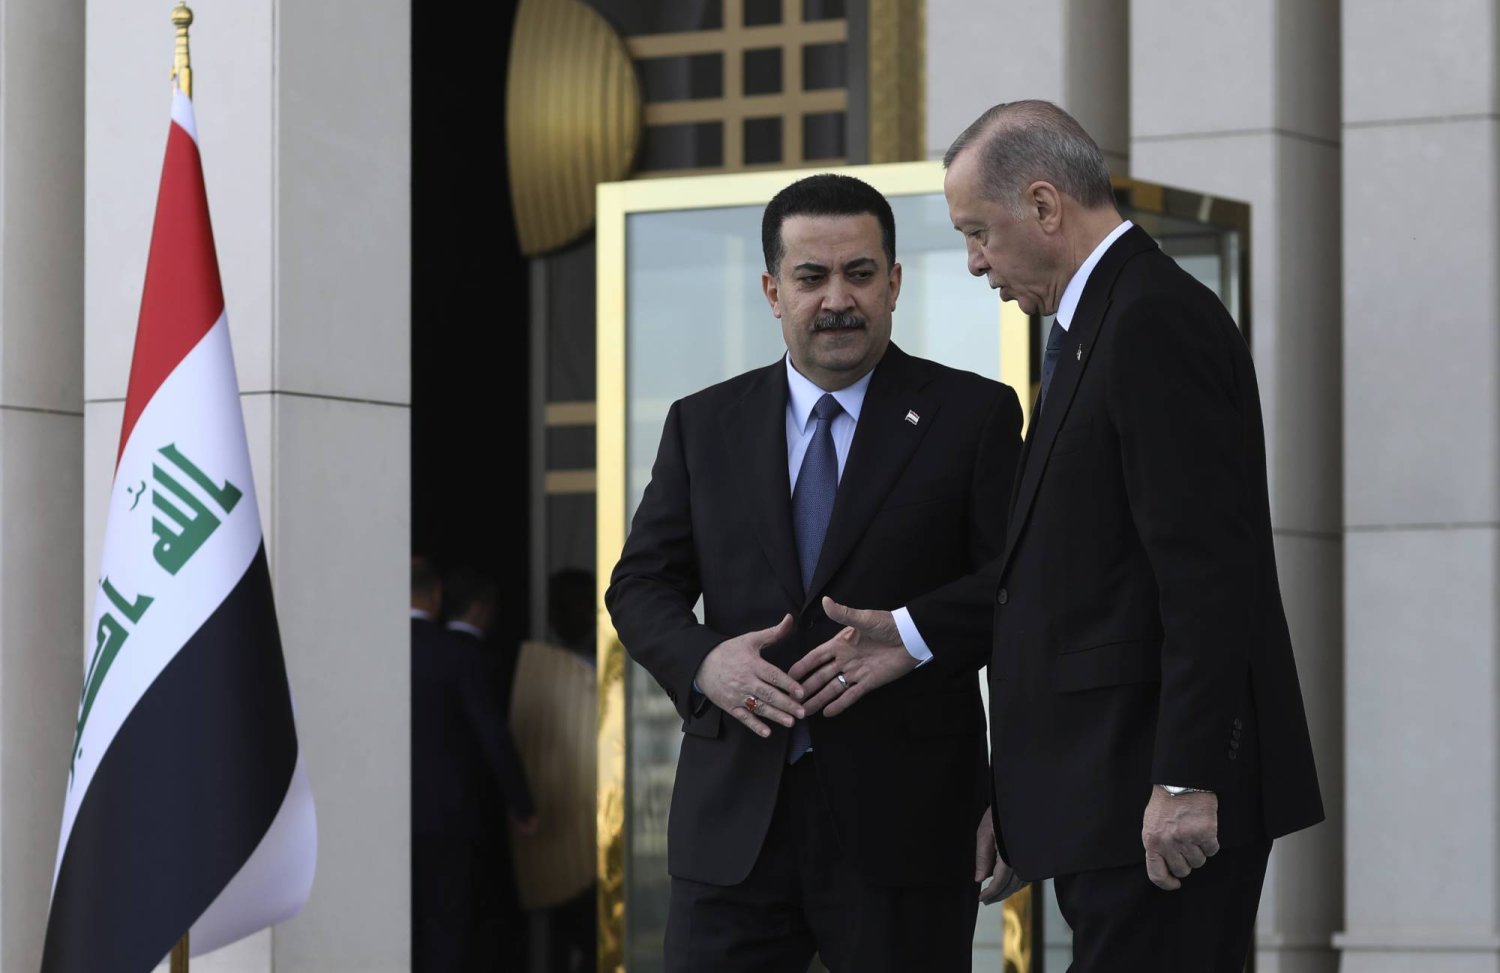 الرئيس التركي رجب طيب إردوغان ورئيس الوزراء العراقي محمد شياع السوداني يتصافحان خلال حفل ترحيب في أنقرة مارس الماضي (أ.ب)